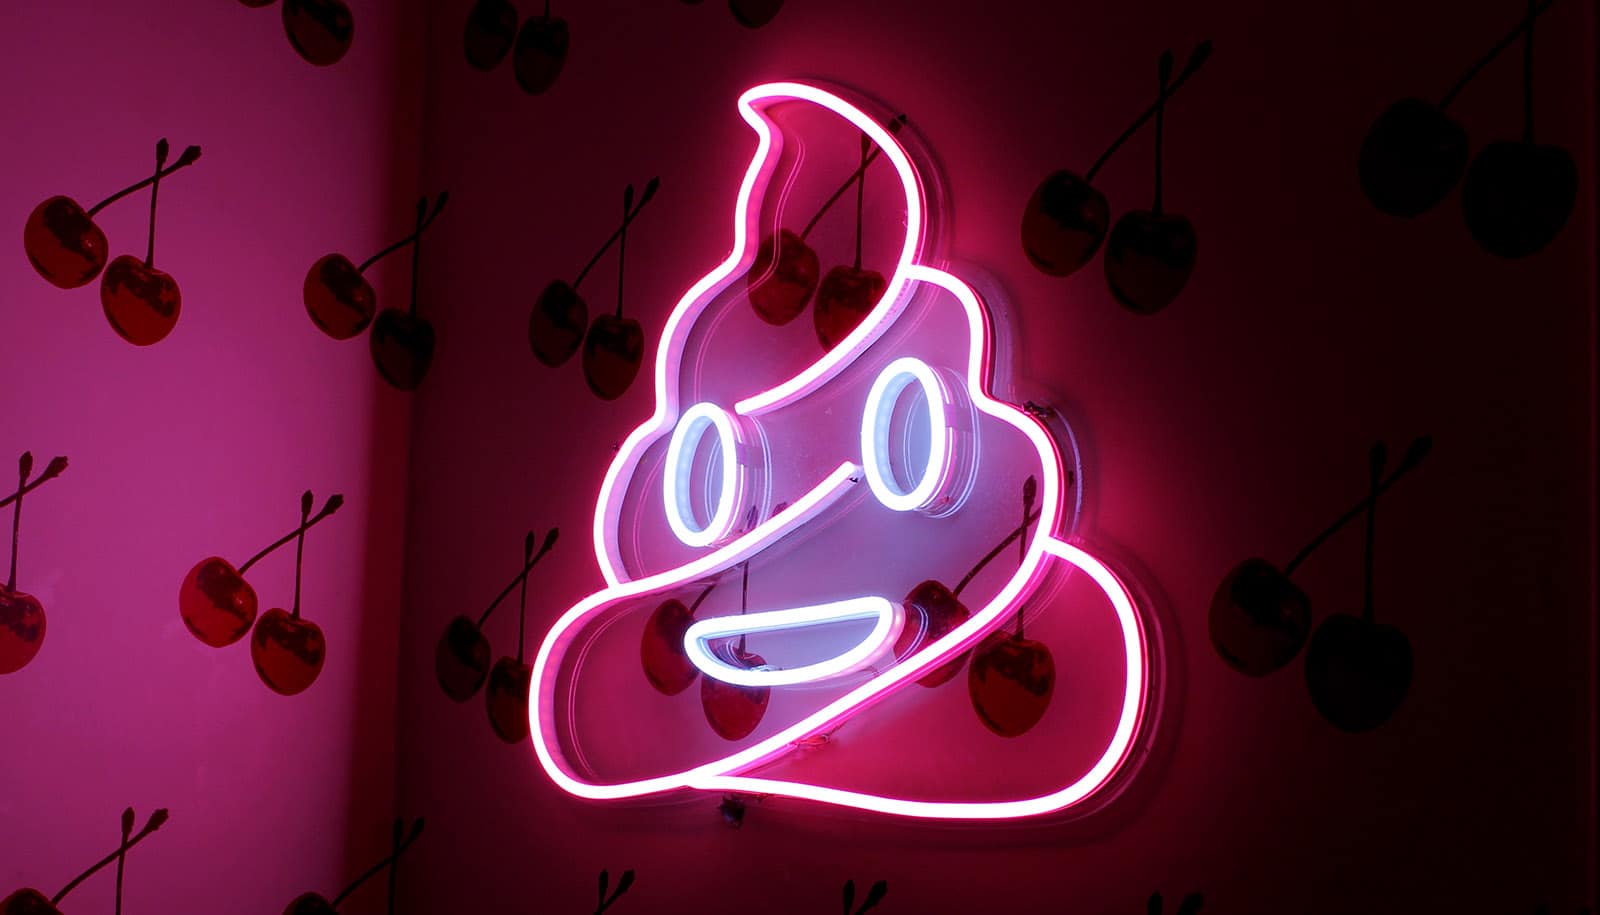 neon poop emoji on wall